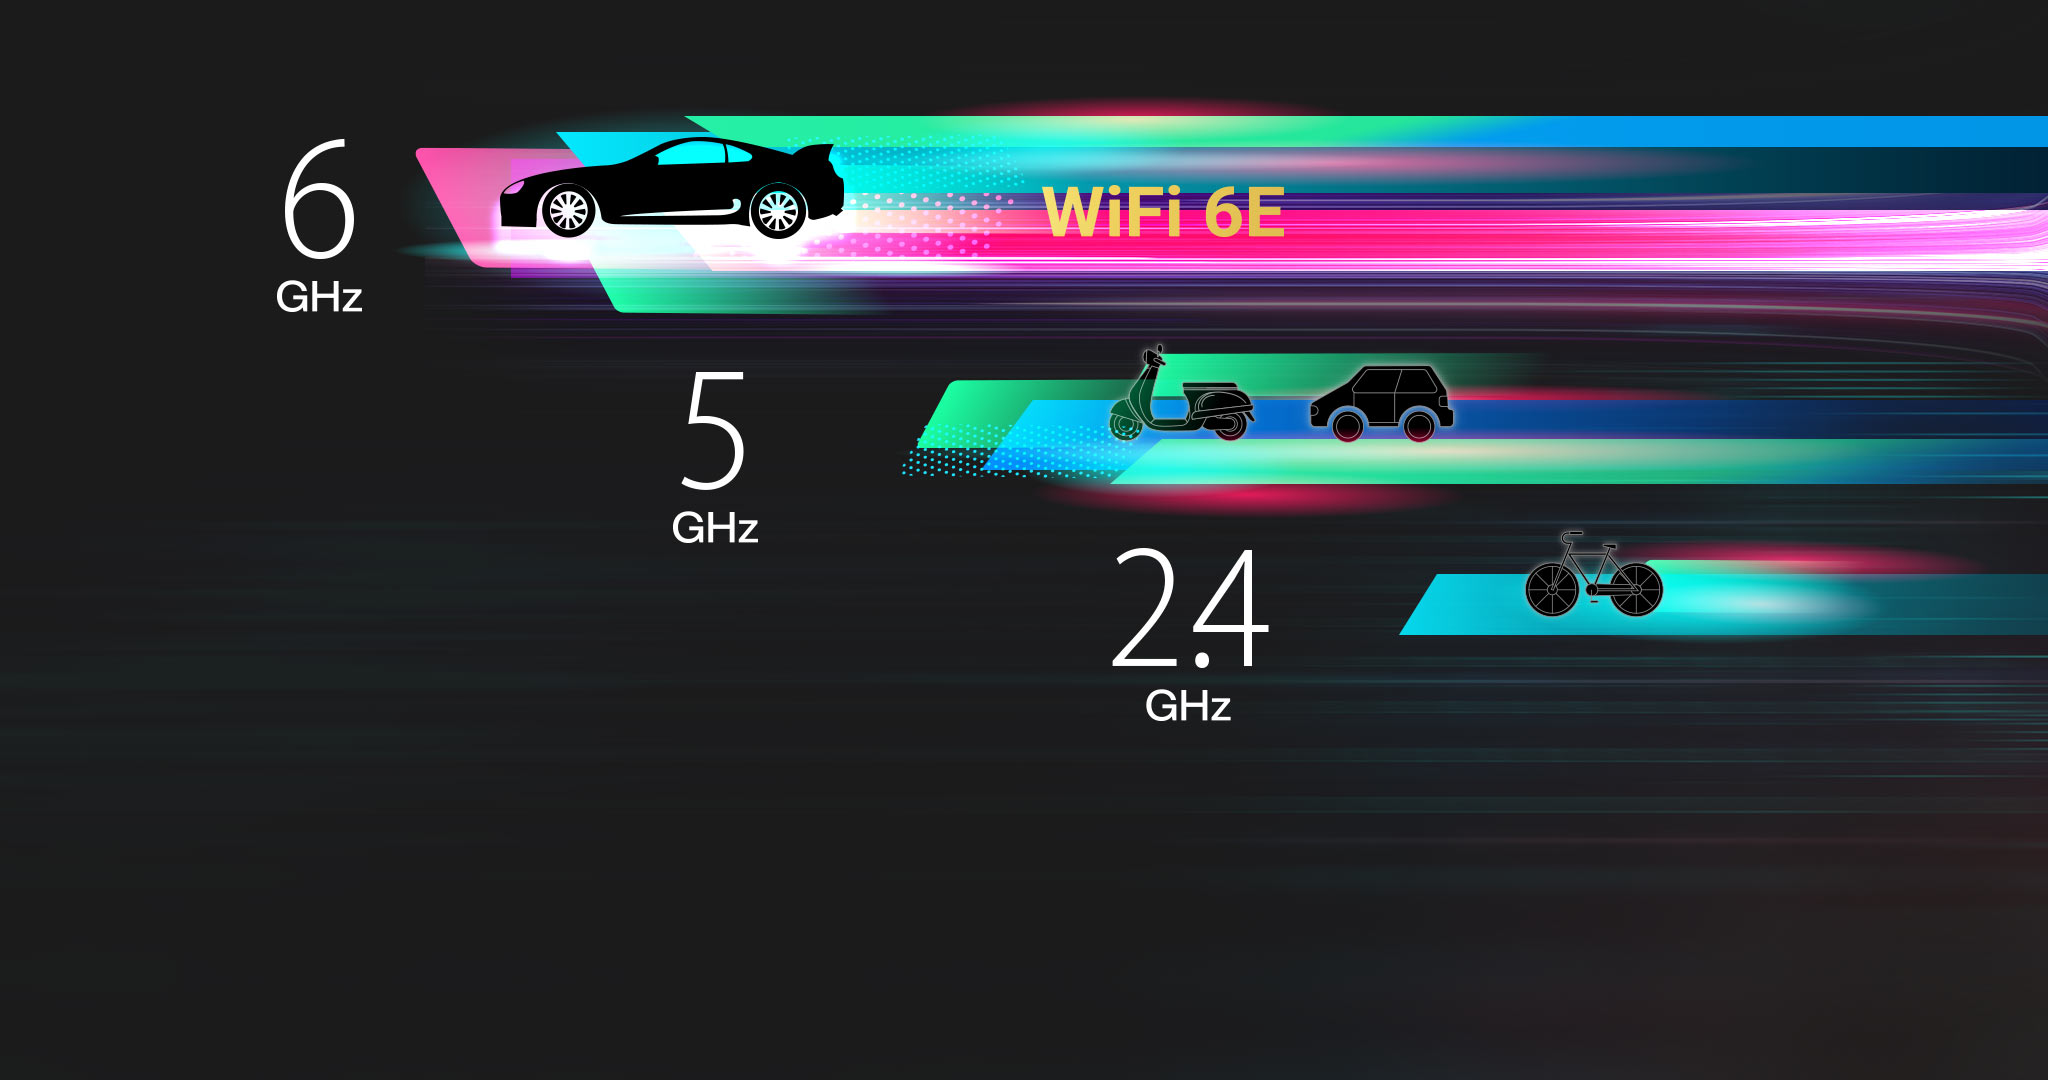 La bande 6GHz est dédiée aux appareils WiFi 6E, offrant plus de canaux de 160MHz